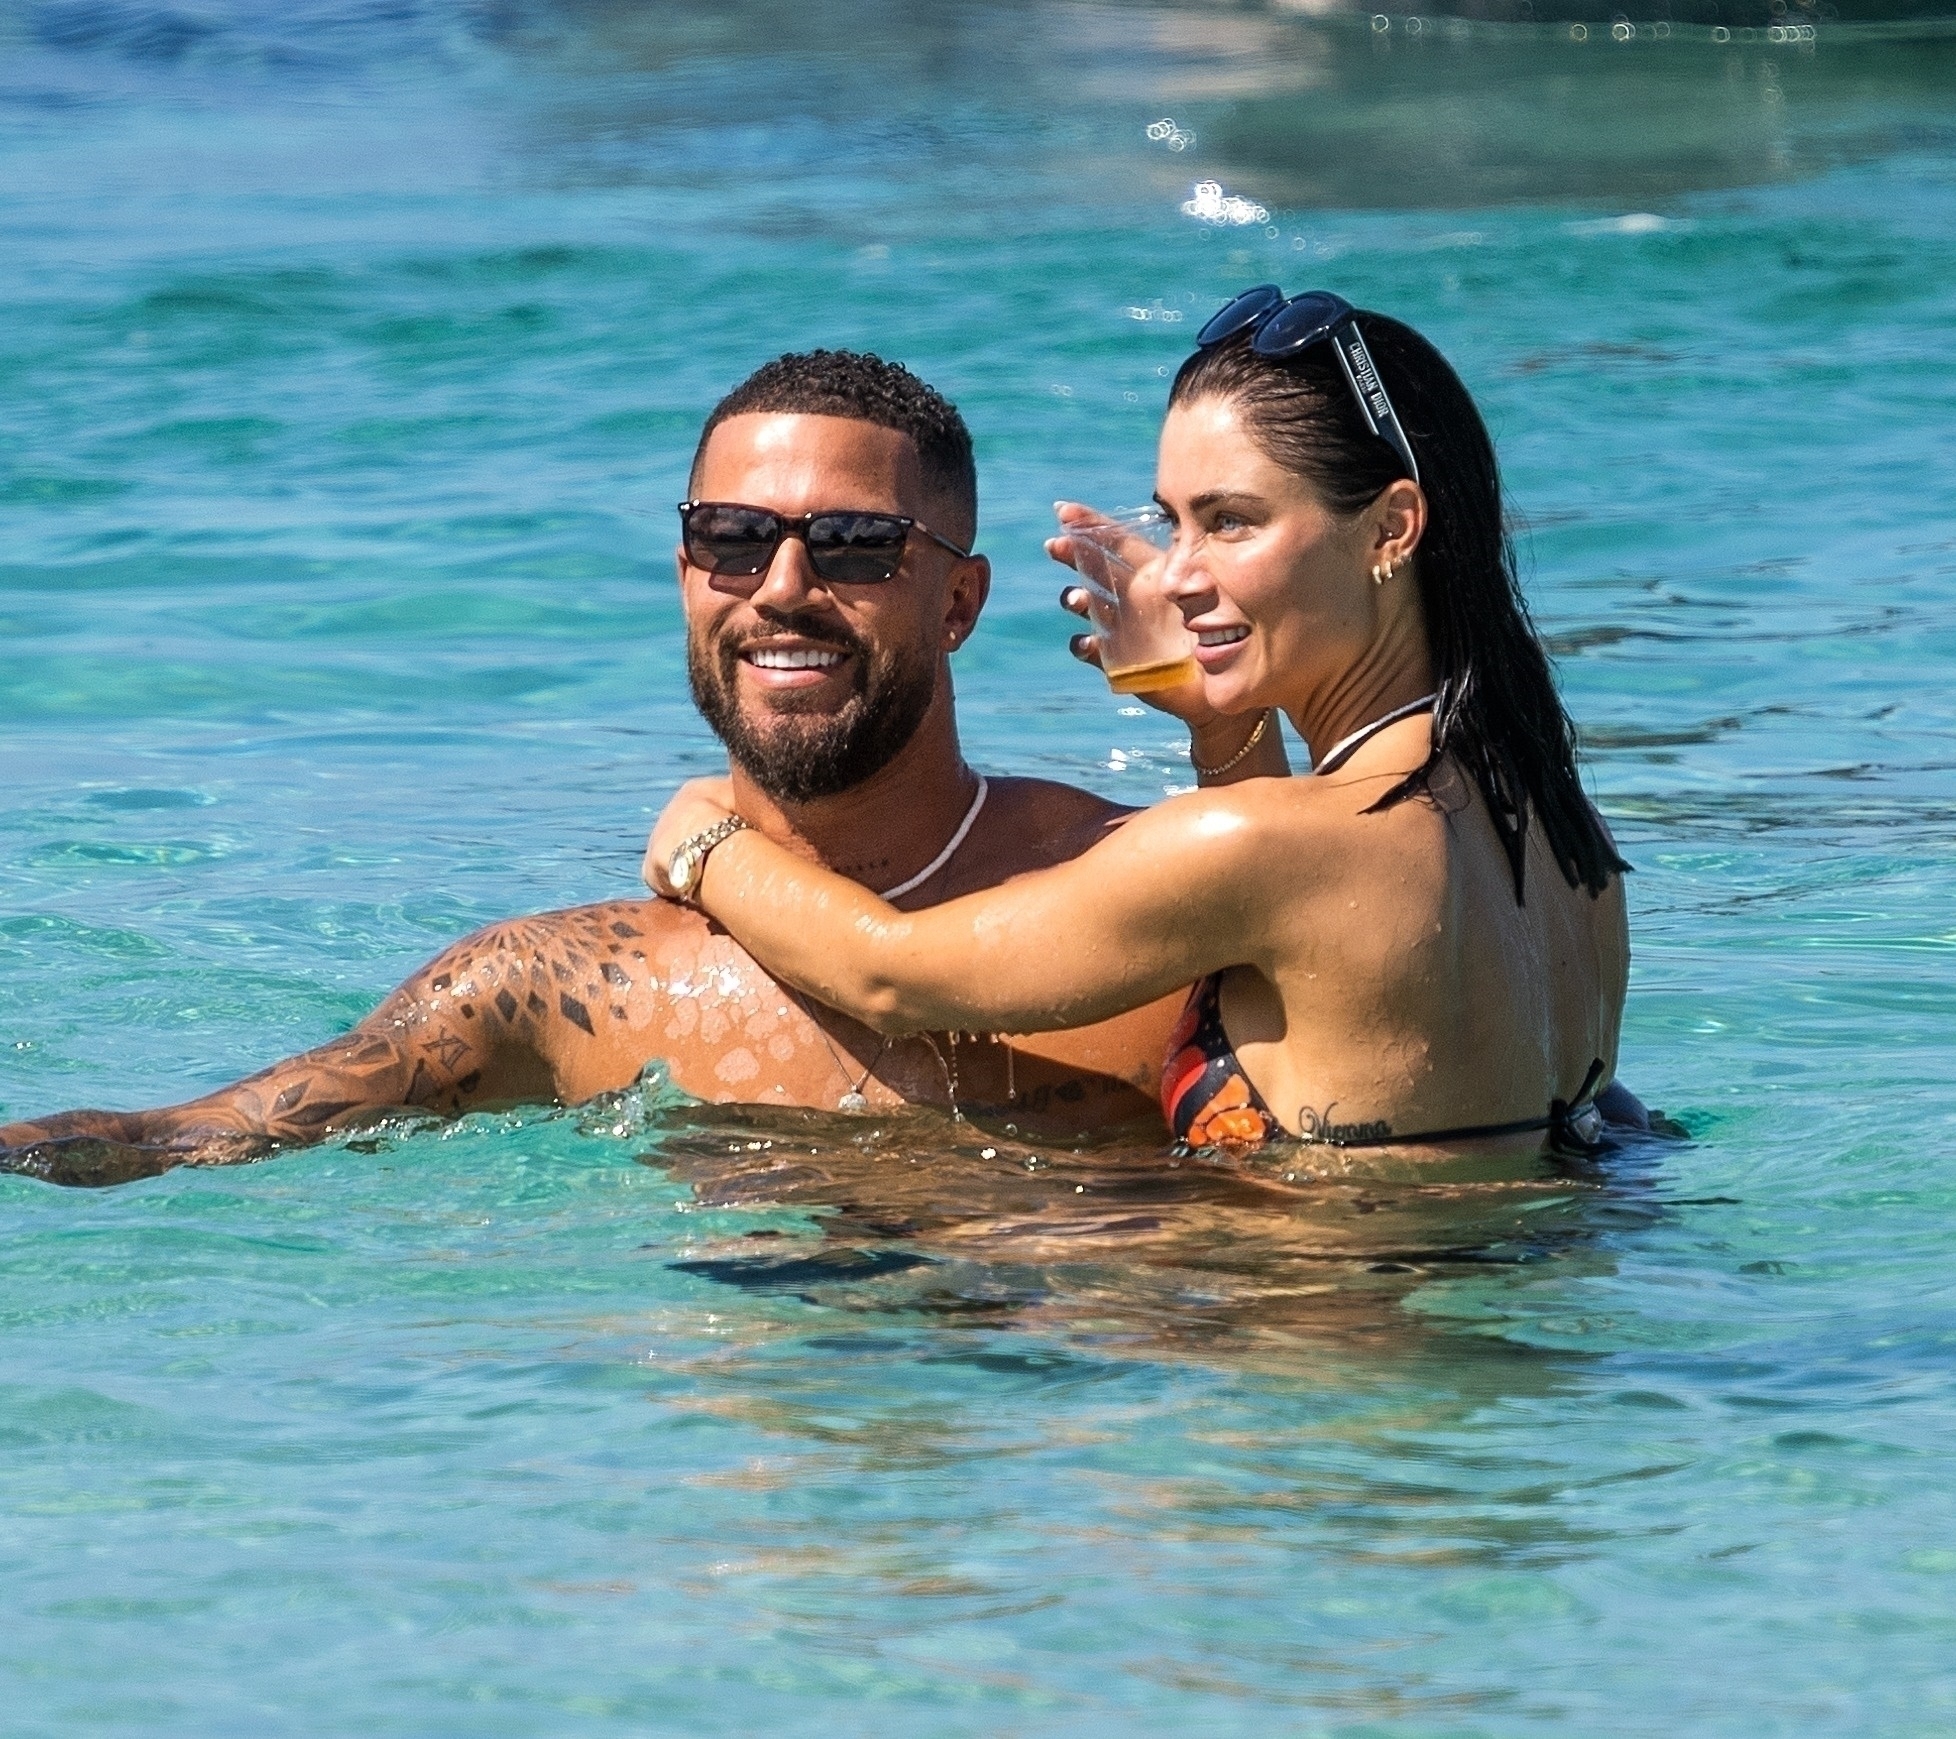 Die exklusiven Schnappschüsse der Sun zeigen ihren idyllischen Strandurlaub mit ihrem Verlobten DJ O'Neal nach einer „schwierigen“ Woche